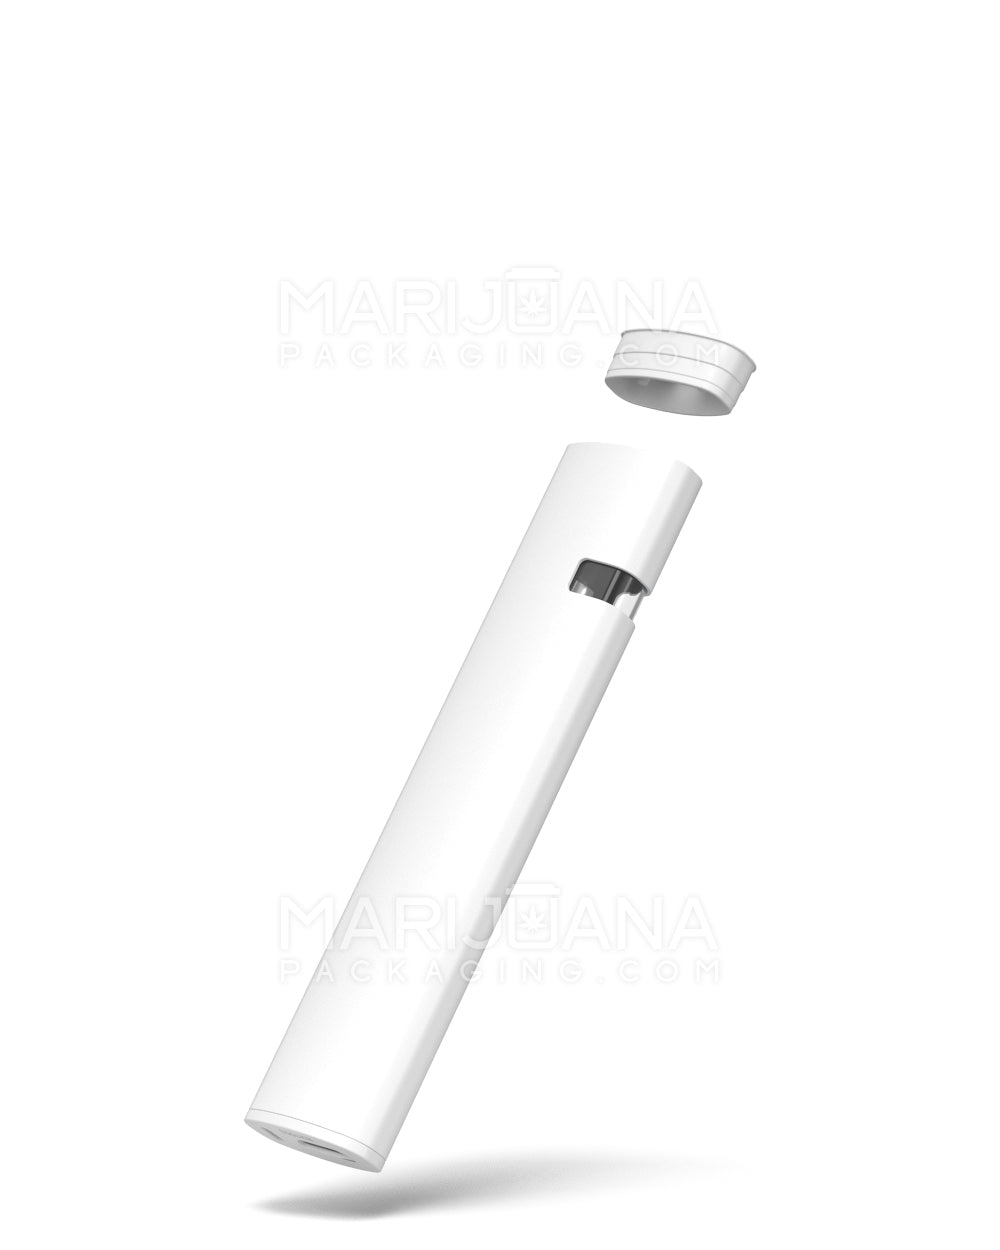 Cigarette Style Tubes - High Flow Filter, White Hemp Paper, White